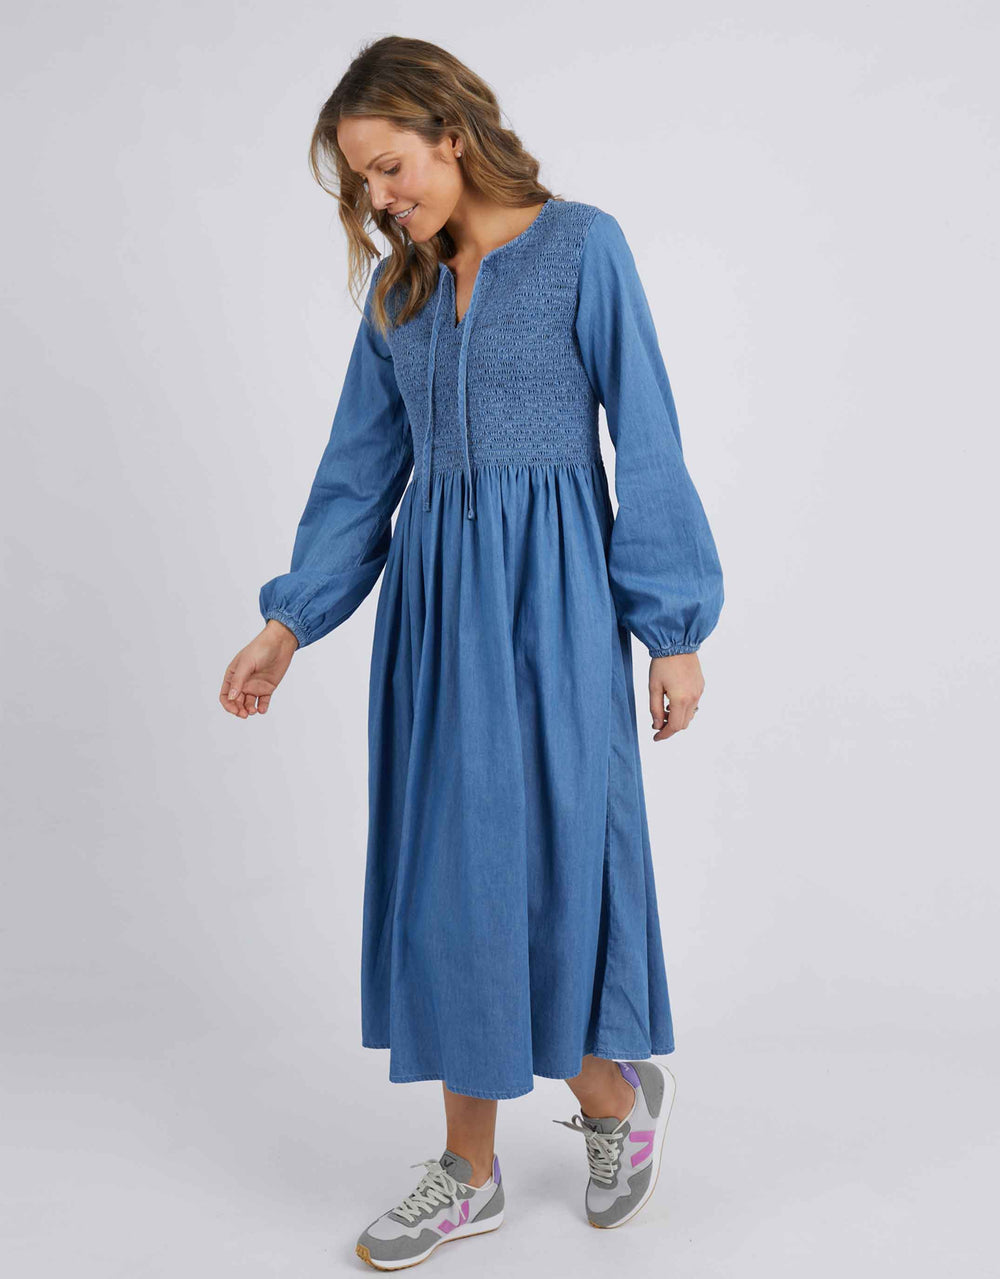 Elm Plus Size Jules Dress - Blue | Women's Clothing